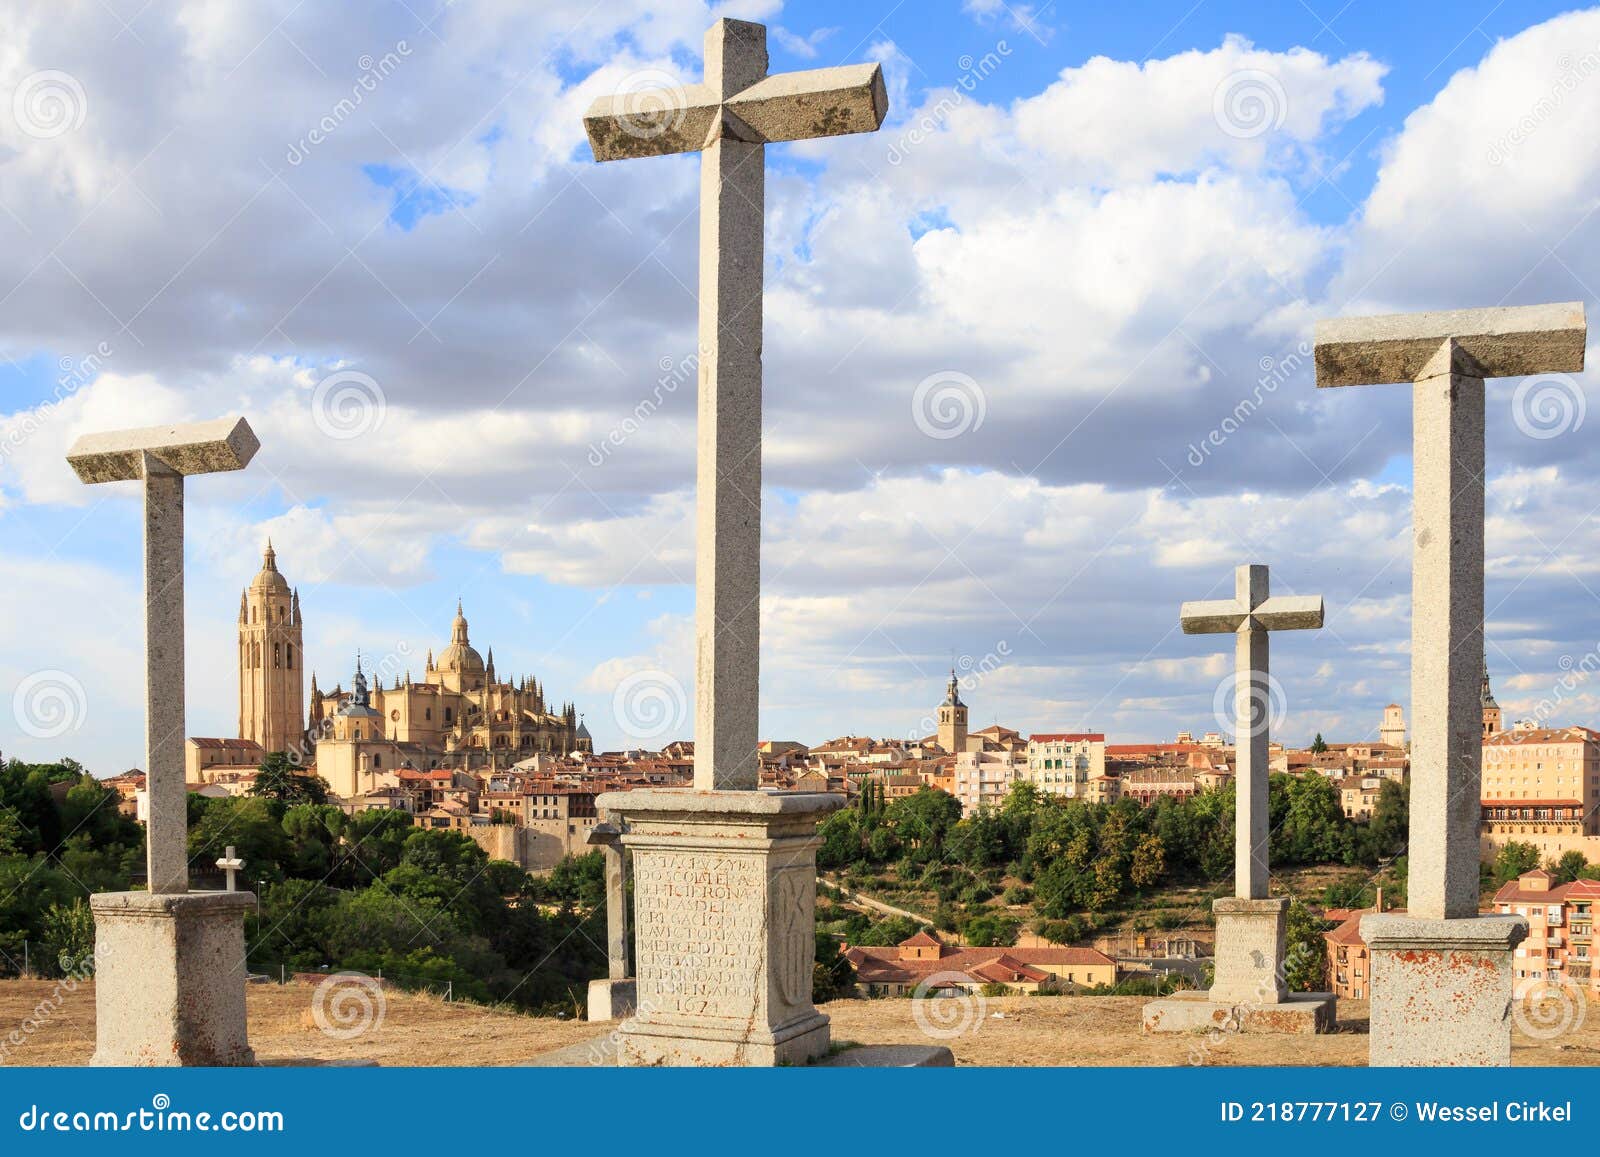 gothic cathedral and mirador de la piedad crosses, segovia, spain